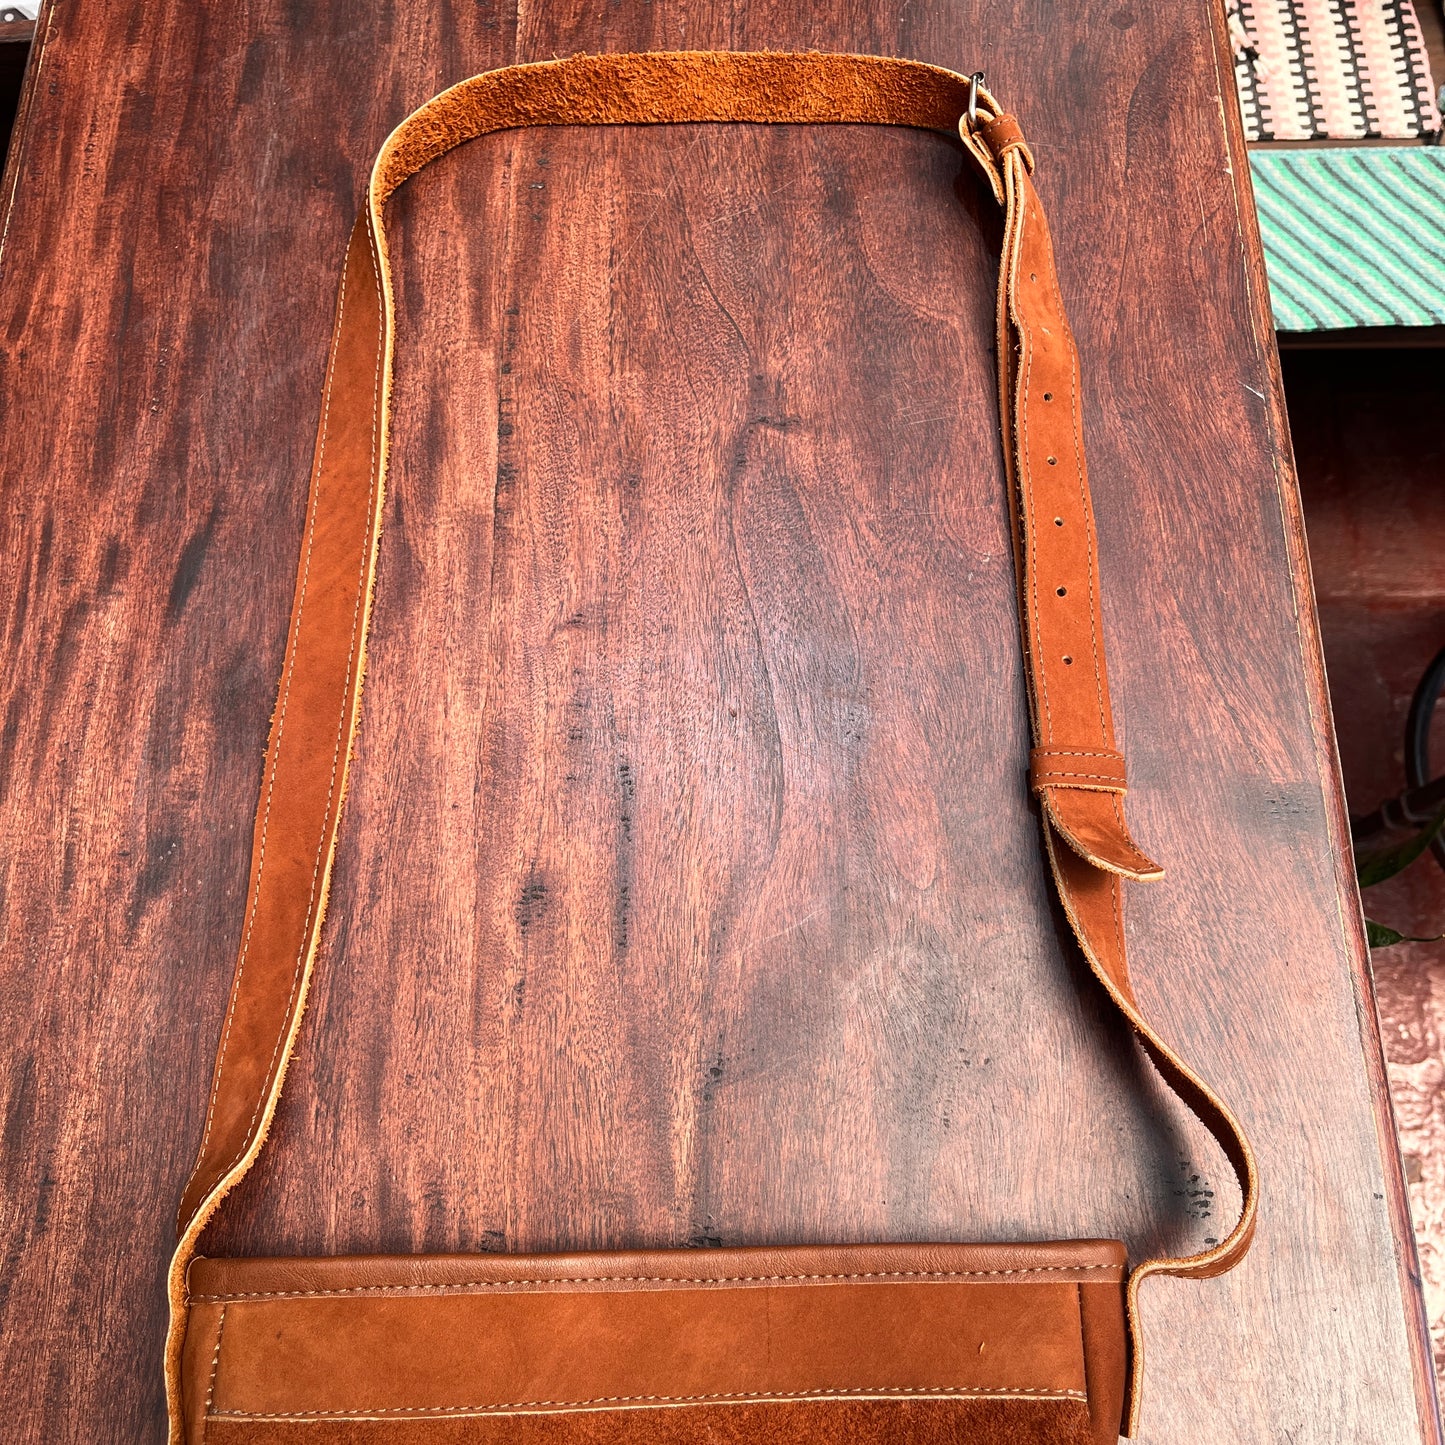 Adjustable Messenger Bag - "Jade goddess", brown suede leather